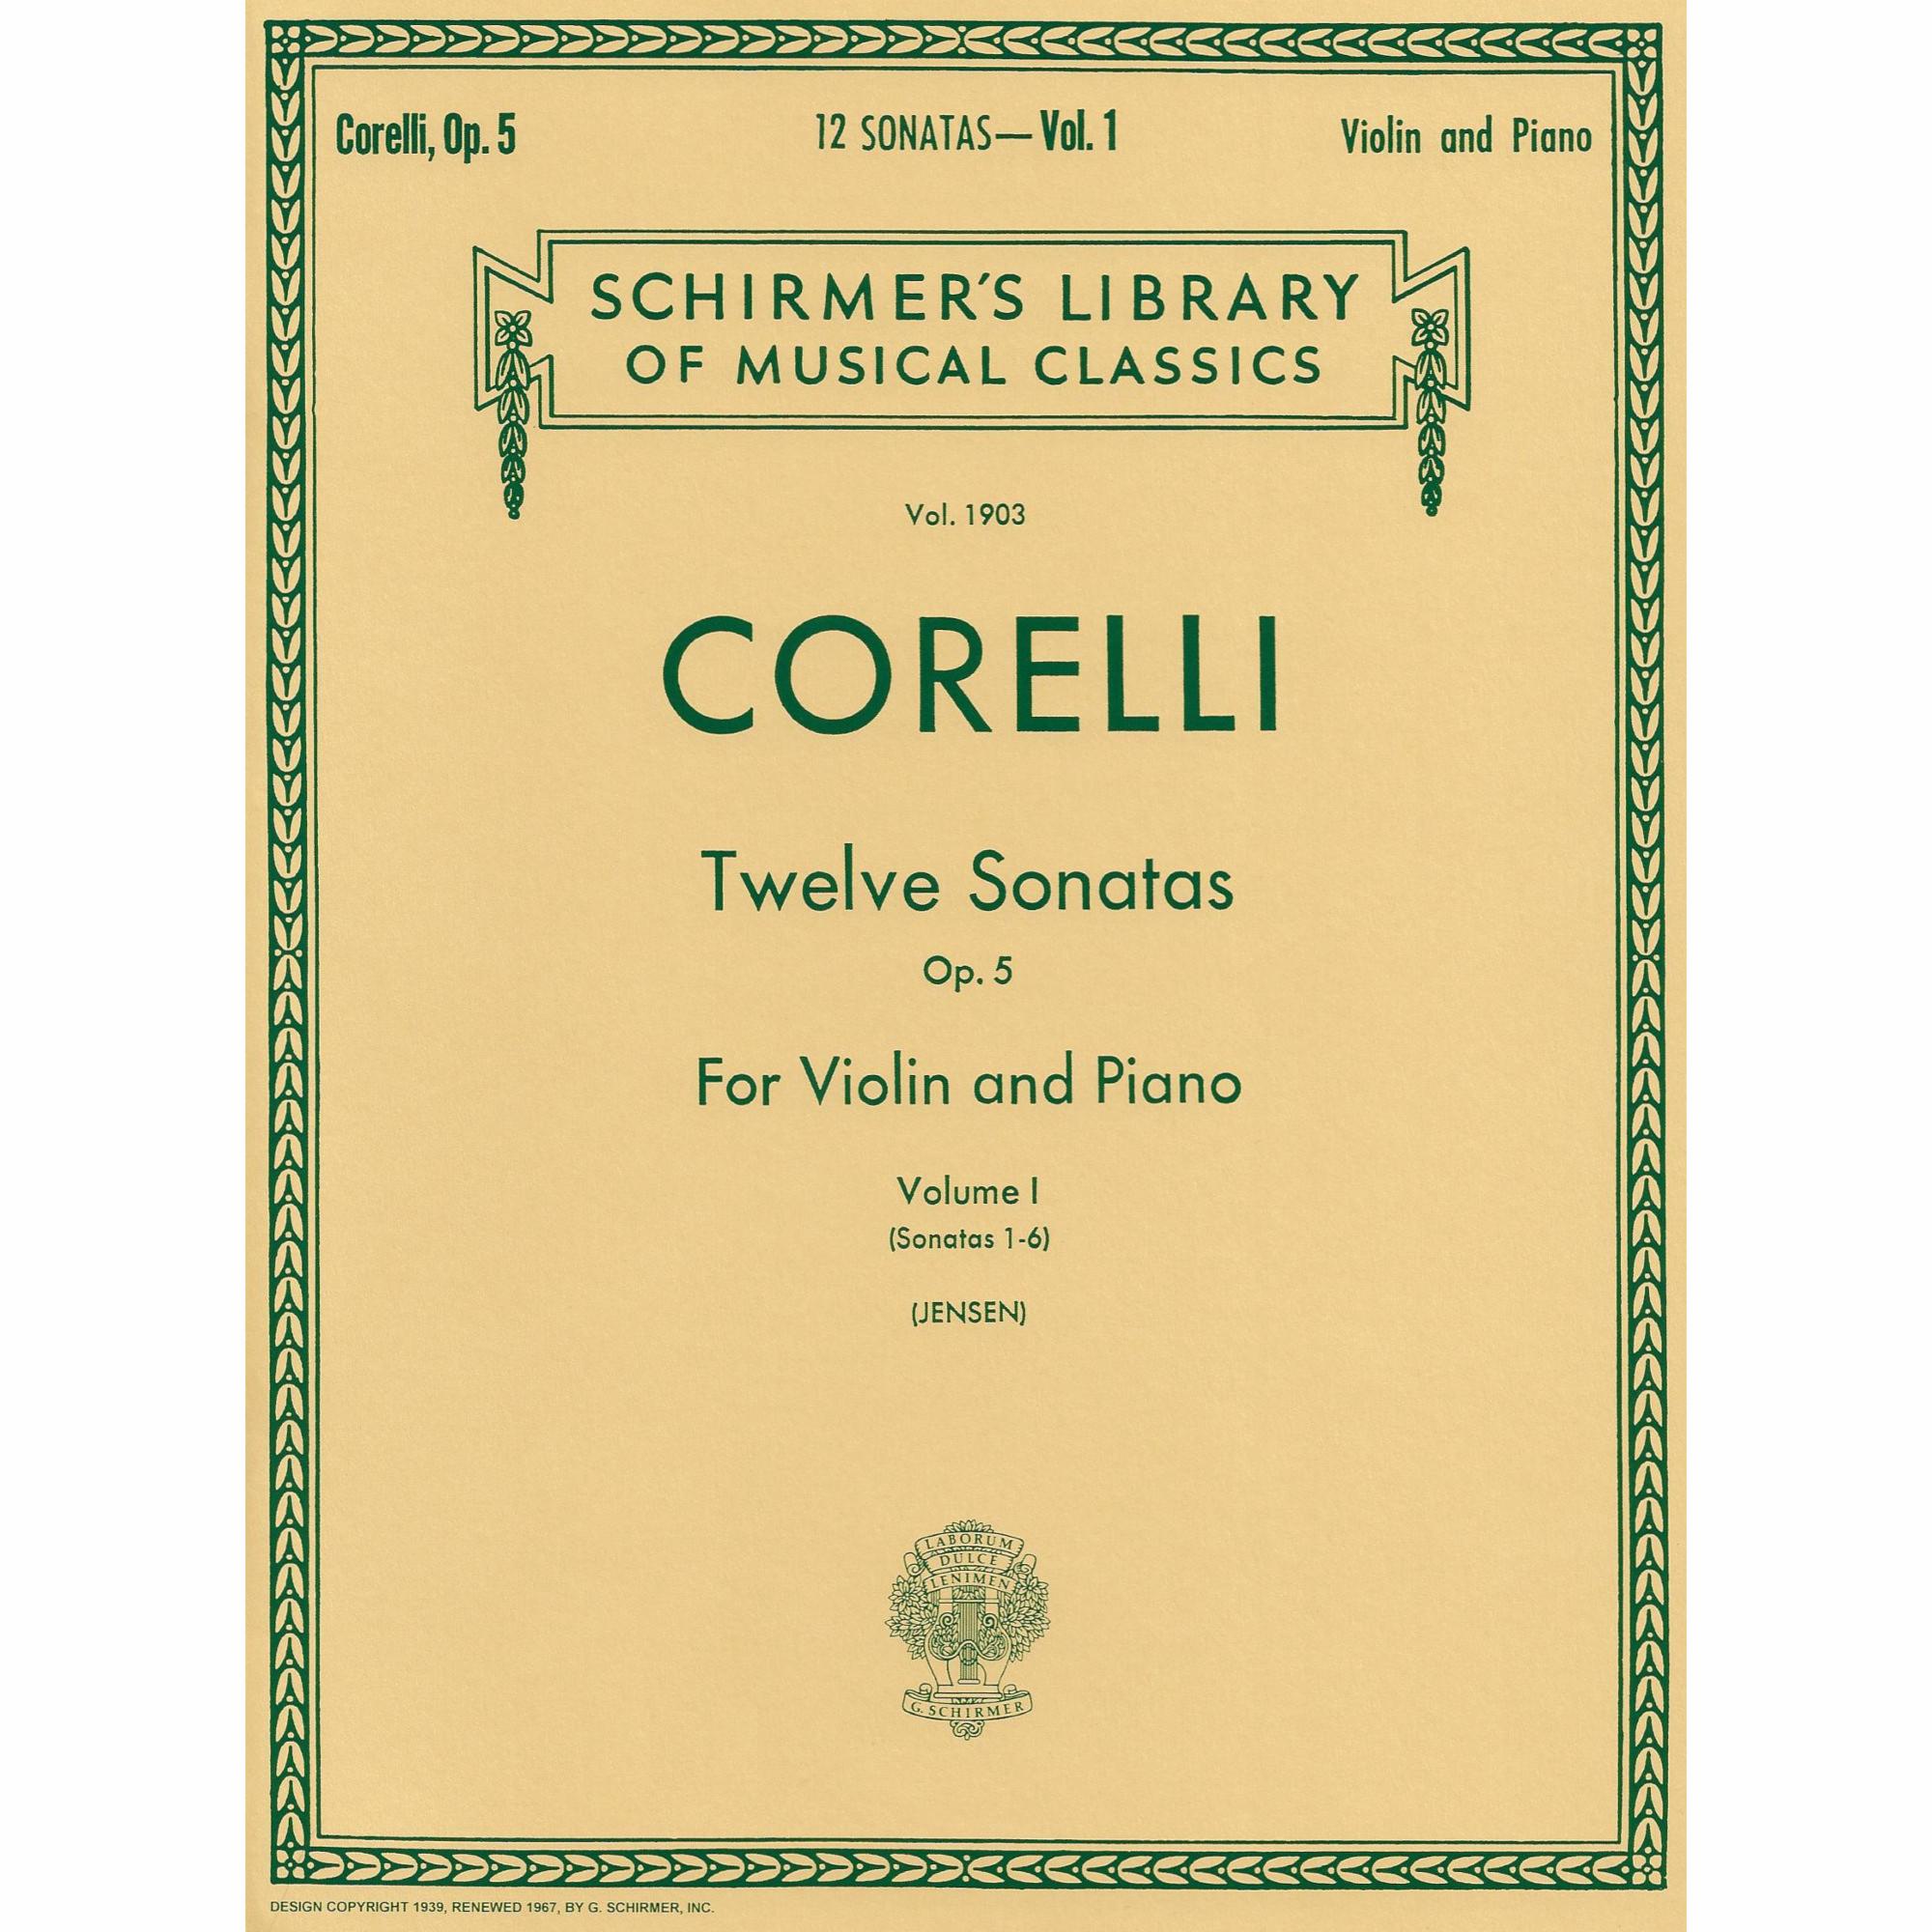 Corelli -- Twelve Sonatas, Op. 5, Vols. I & II for Violin and Piano